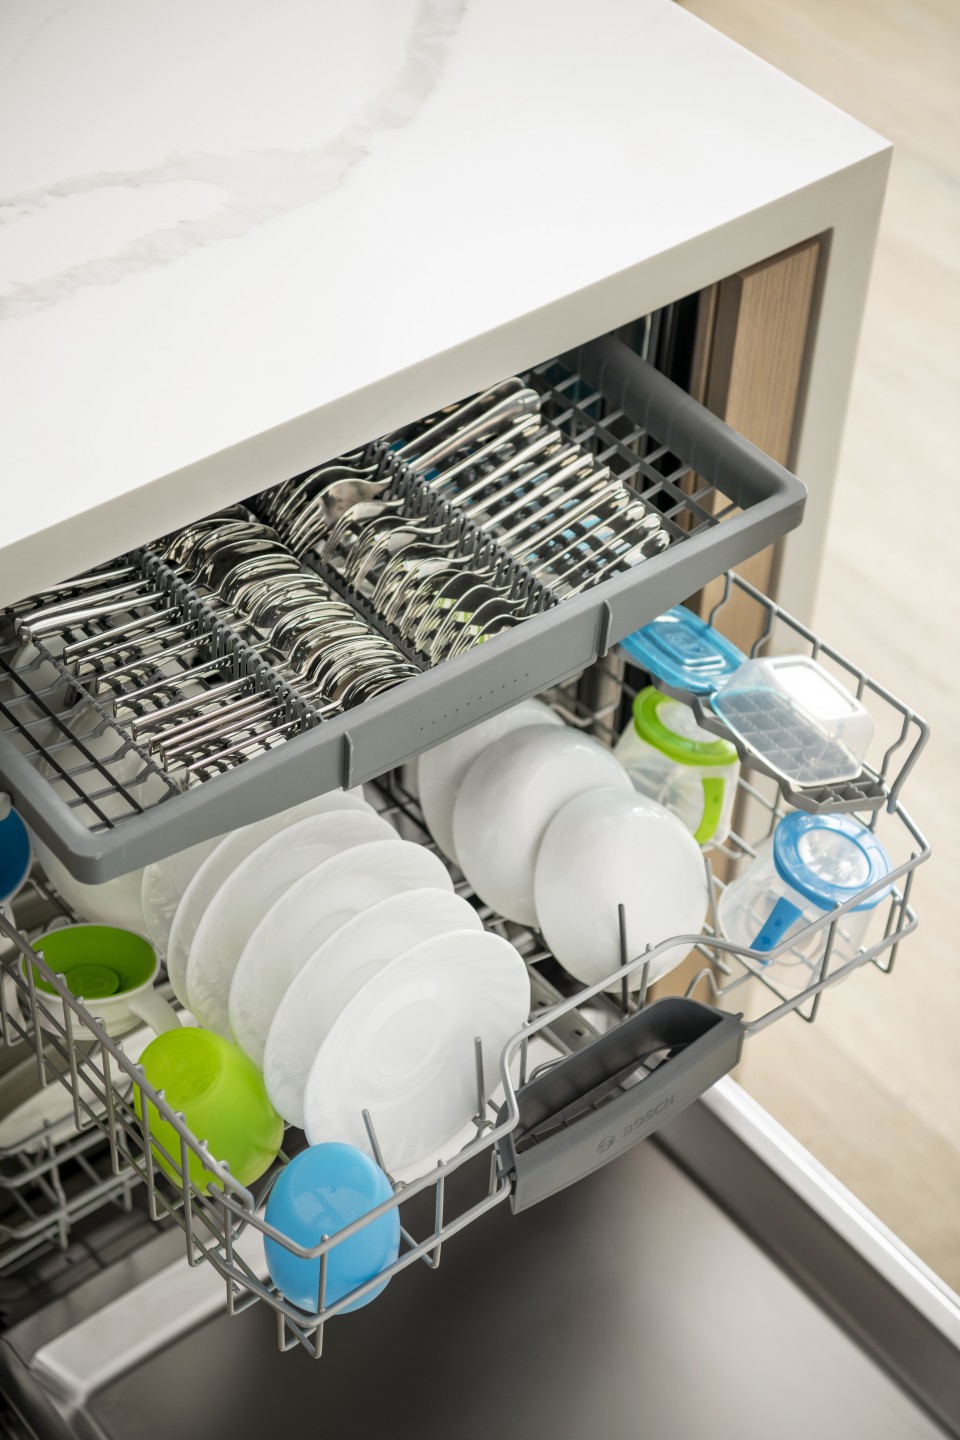 Bosch Lave-vaisselle intelligent encastrable Série 100 24 po avec